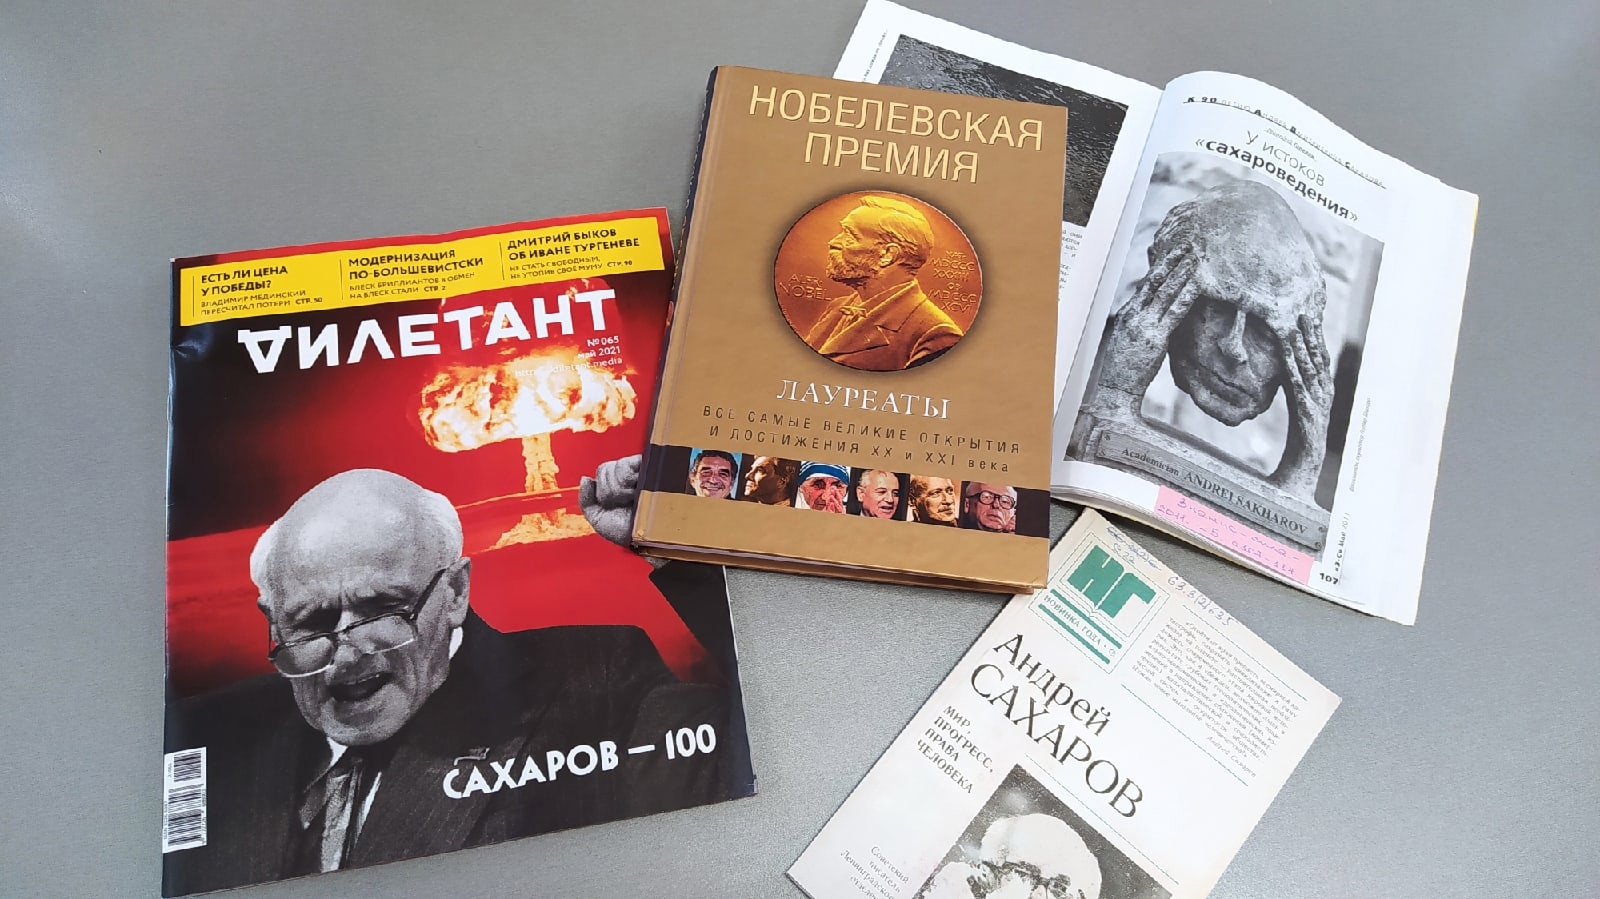 В читальном зале в мае работает выставка-юбилей «Мир, прогресс, права человека», посвященная 100-летию Андрея Дмитриевича Сахарова.